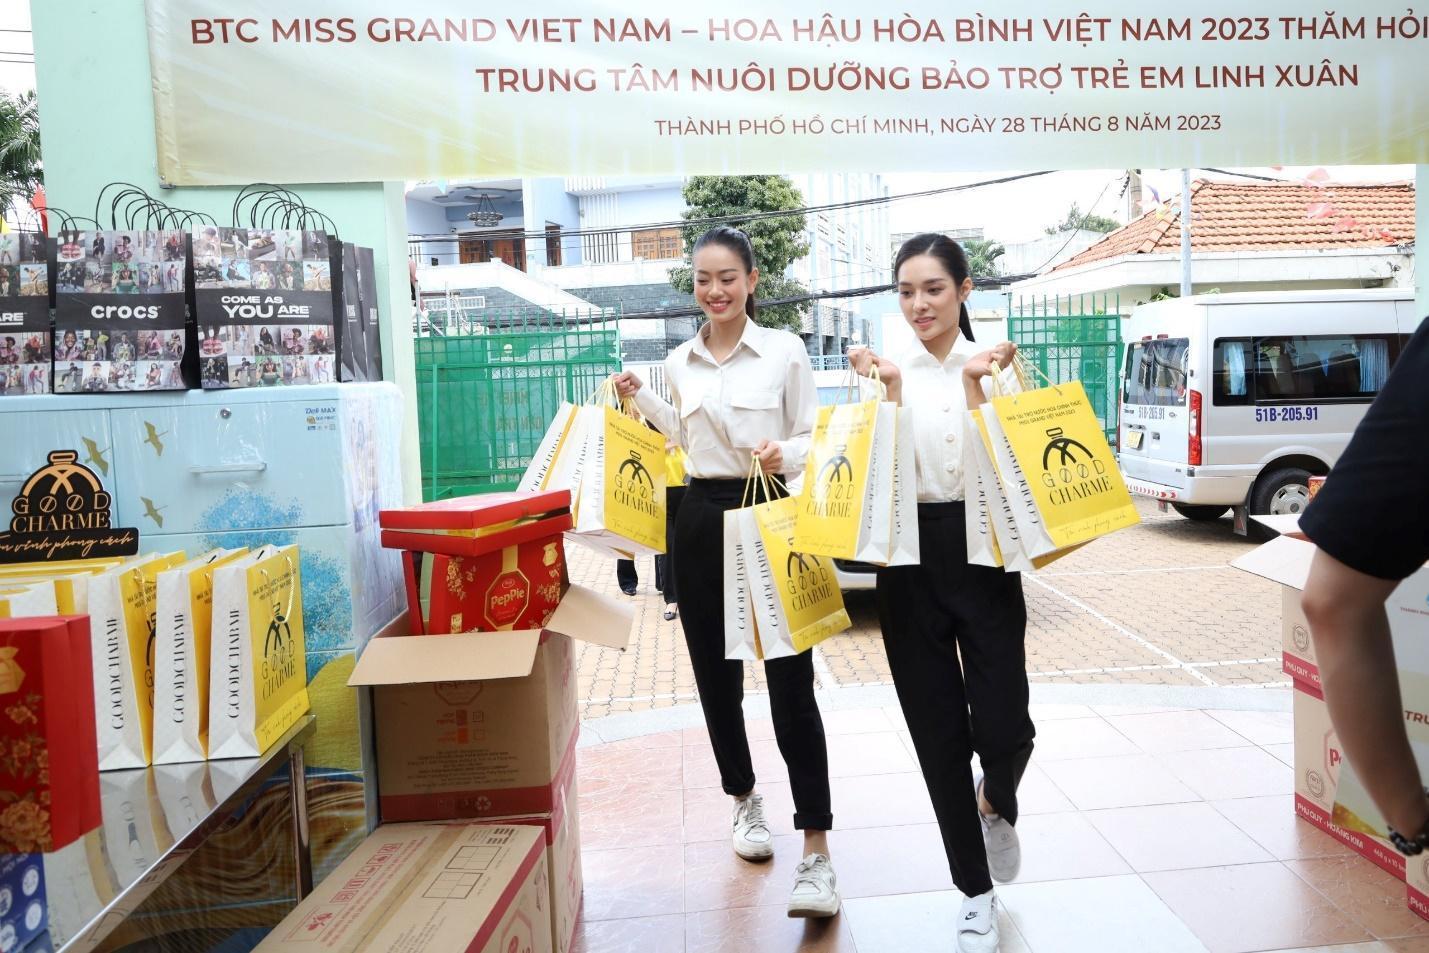 Sau Chung kết, GoodCharme tiếp tục đồng hành cùng Top 5 Hoa hậu Hòa Bình Việt Nam 2023 trong những hoạt đồng cộng đồng - Ảnh 4.